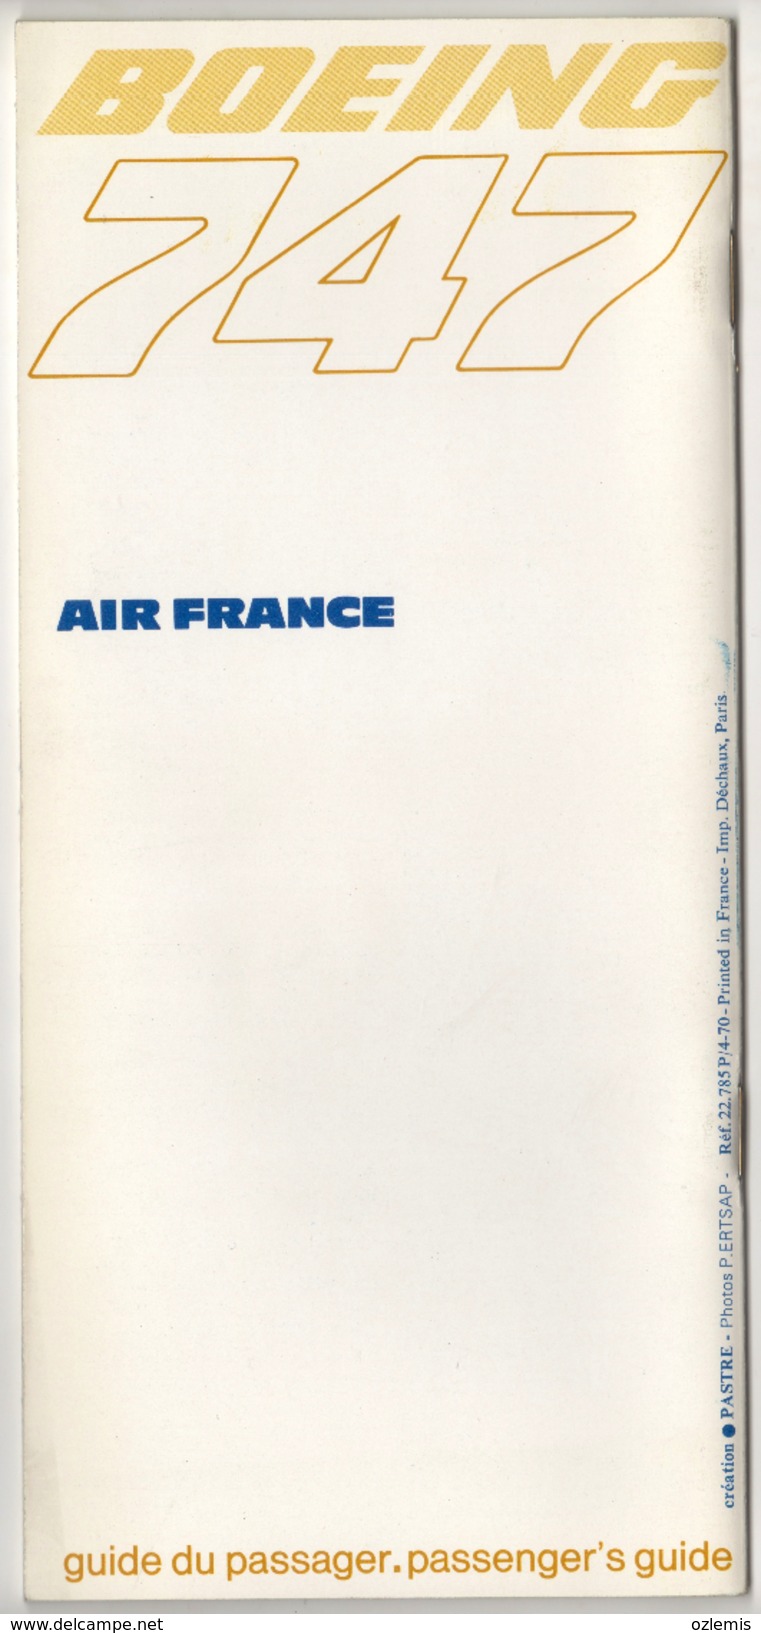 AIR FRANCE AIRLINES BOEING 747 PASSENGER'S GUIDE 27 PAGES - Pubblicità